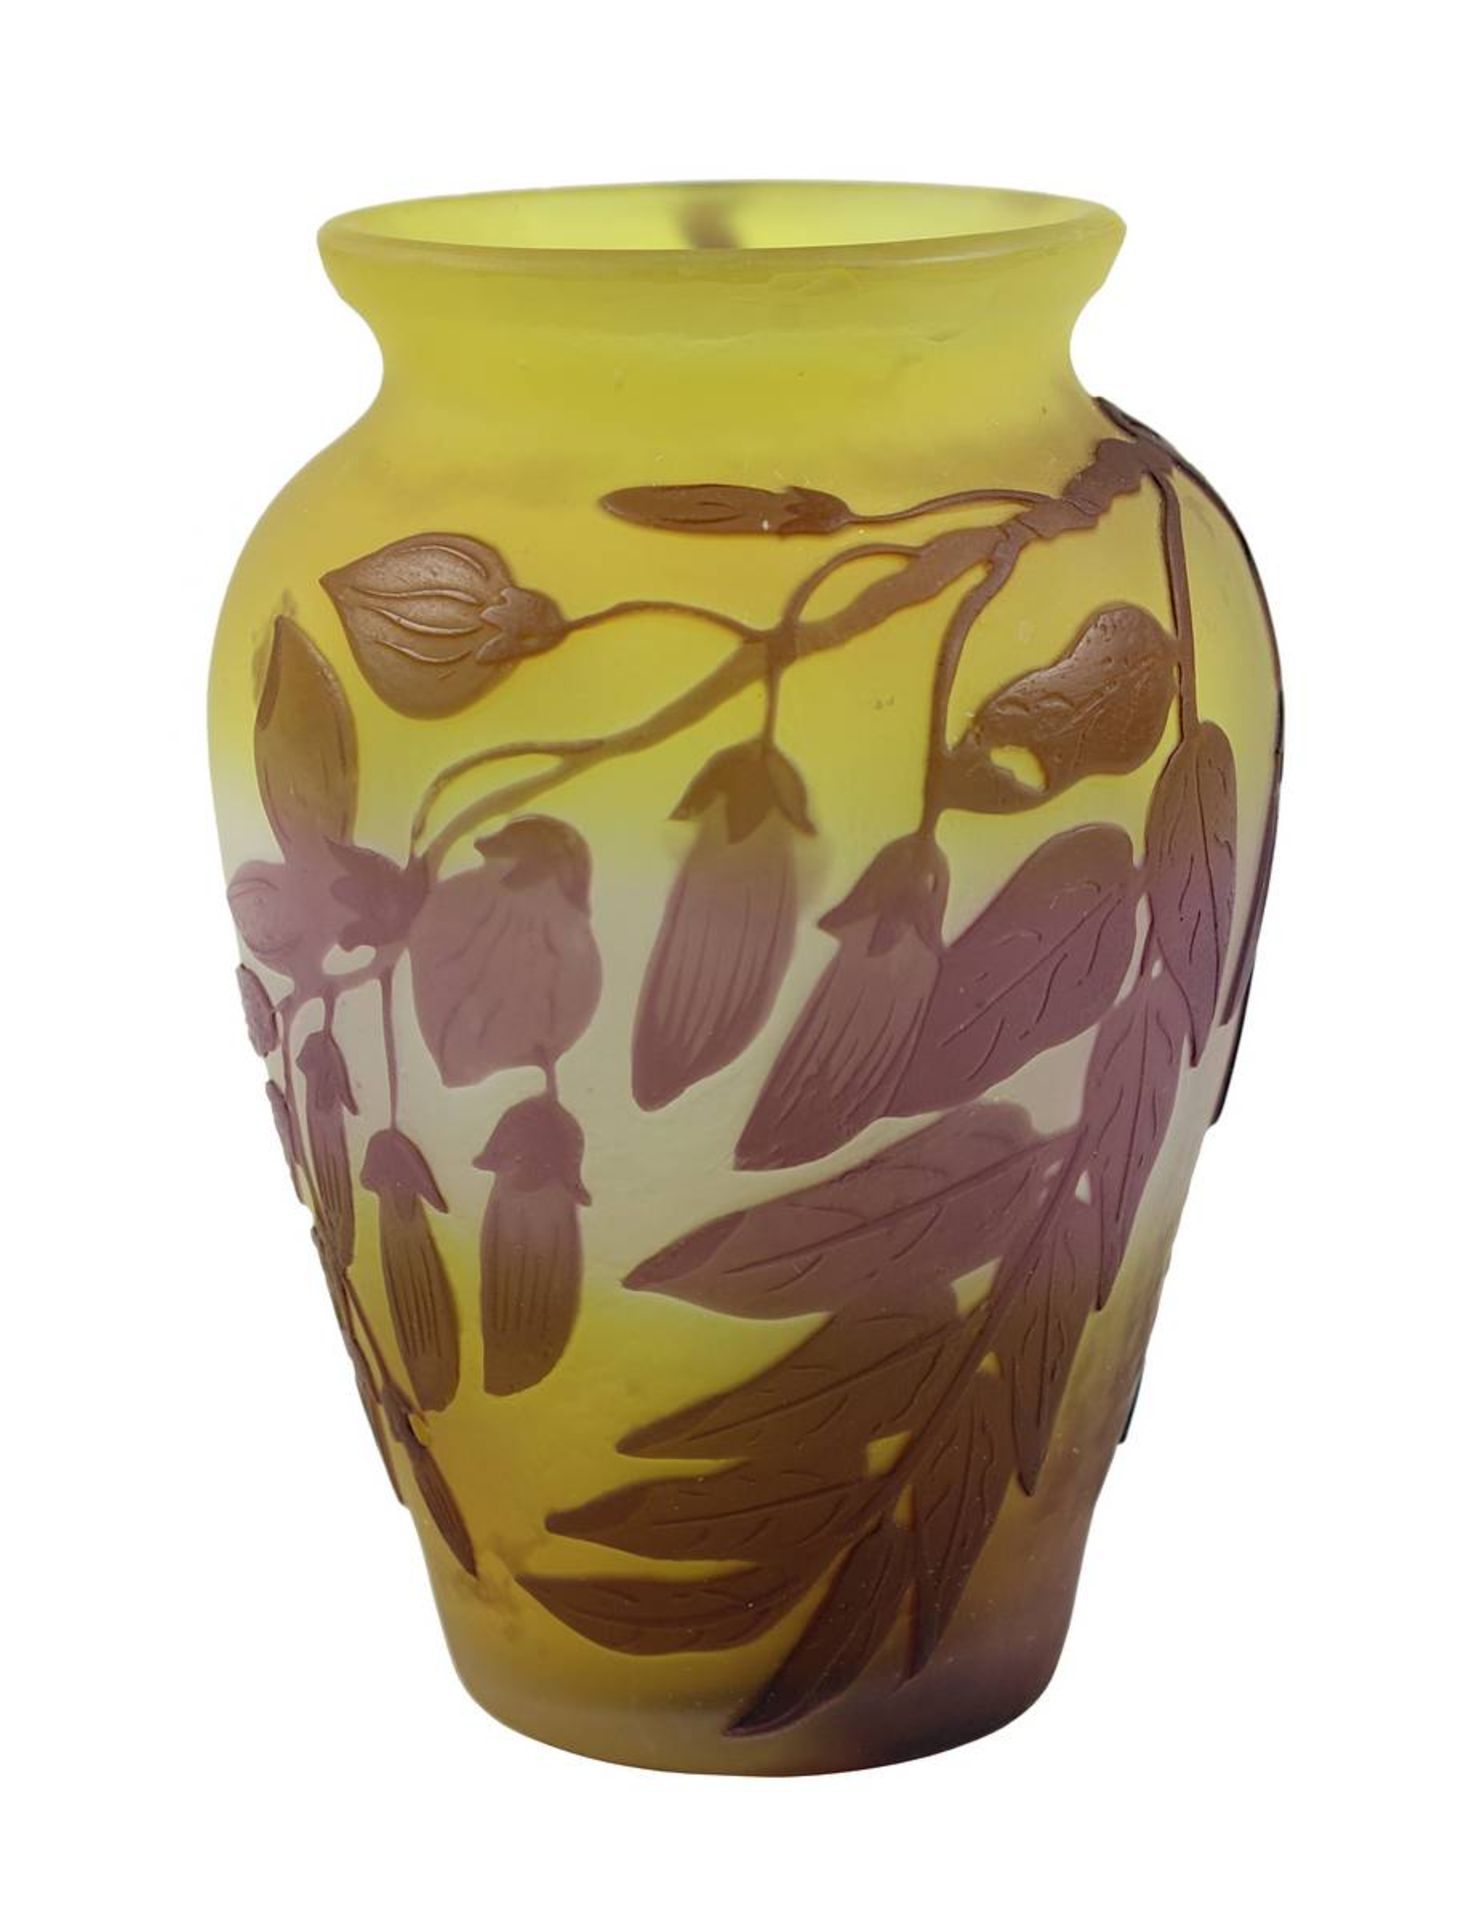 Gallé Jugendstil-Vase mit Glyziniendekor, Nancy 1906 - 1914, Klarglaskorpus, innen mit gelbem